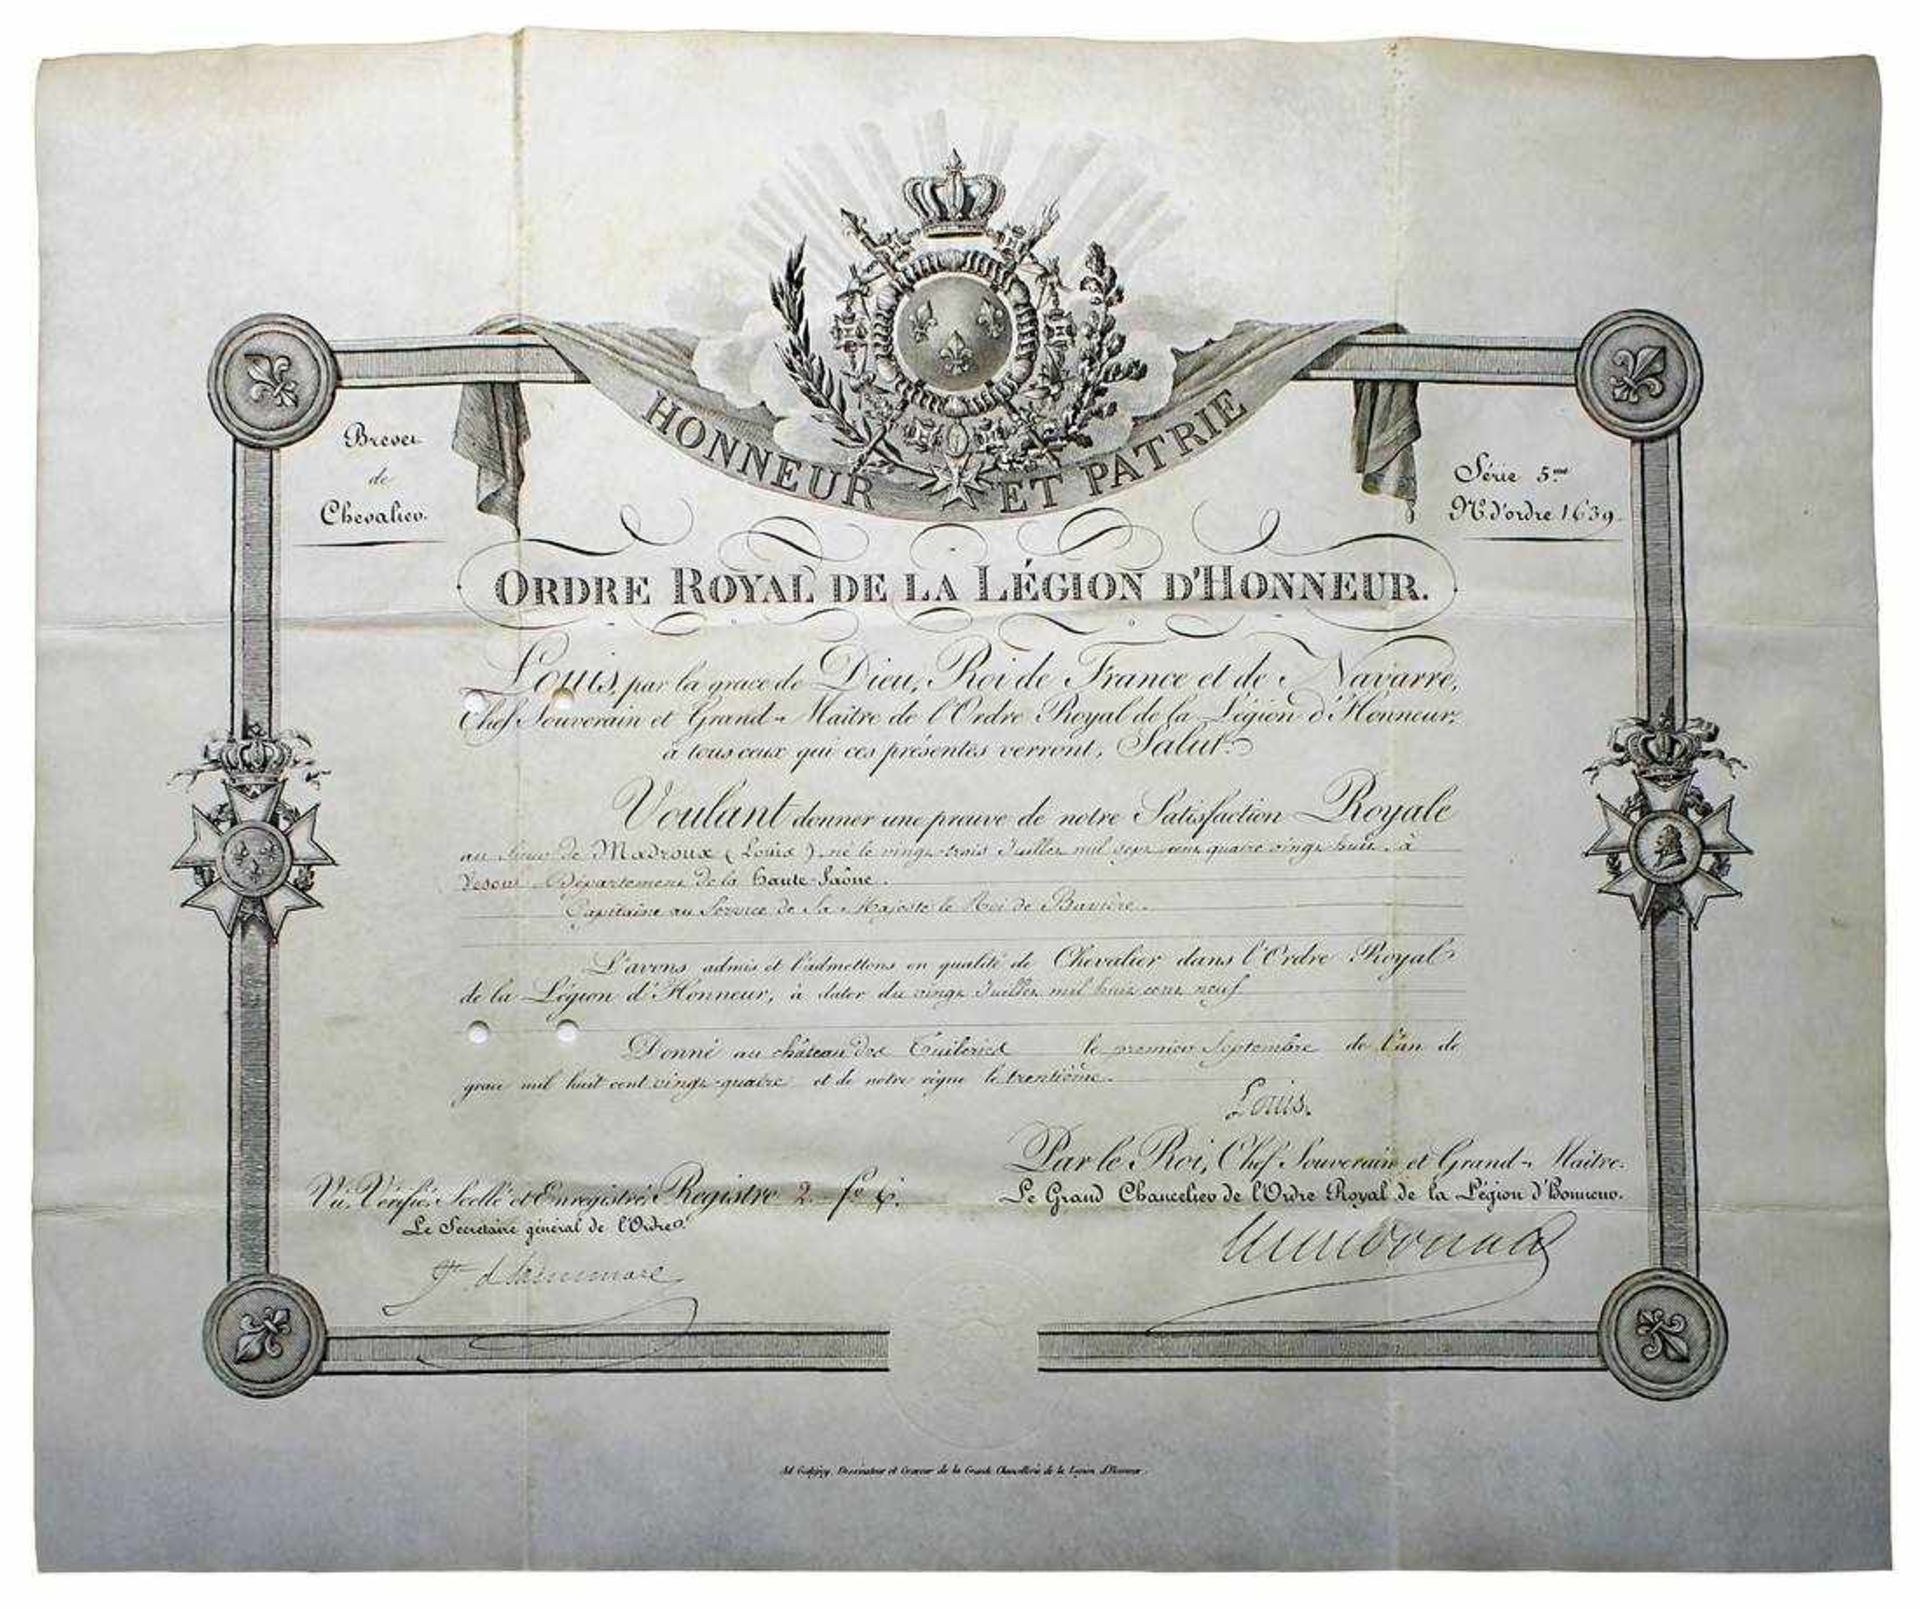 Ernennung des Ludwig von Madroux (1788 - 1865), Capitaine au Service de Sa Majesté le Roi de